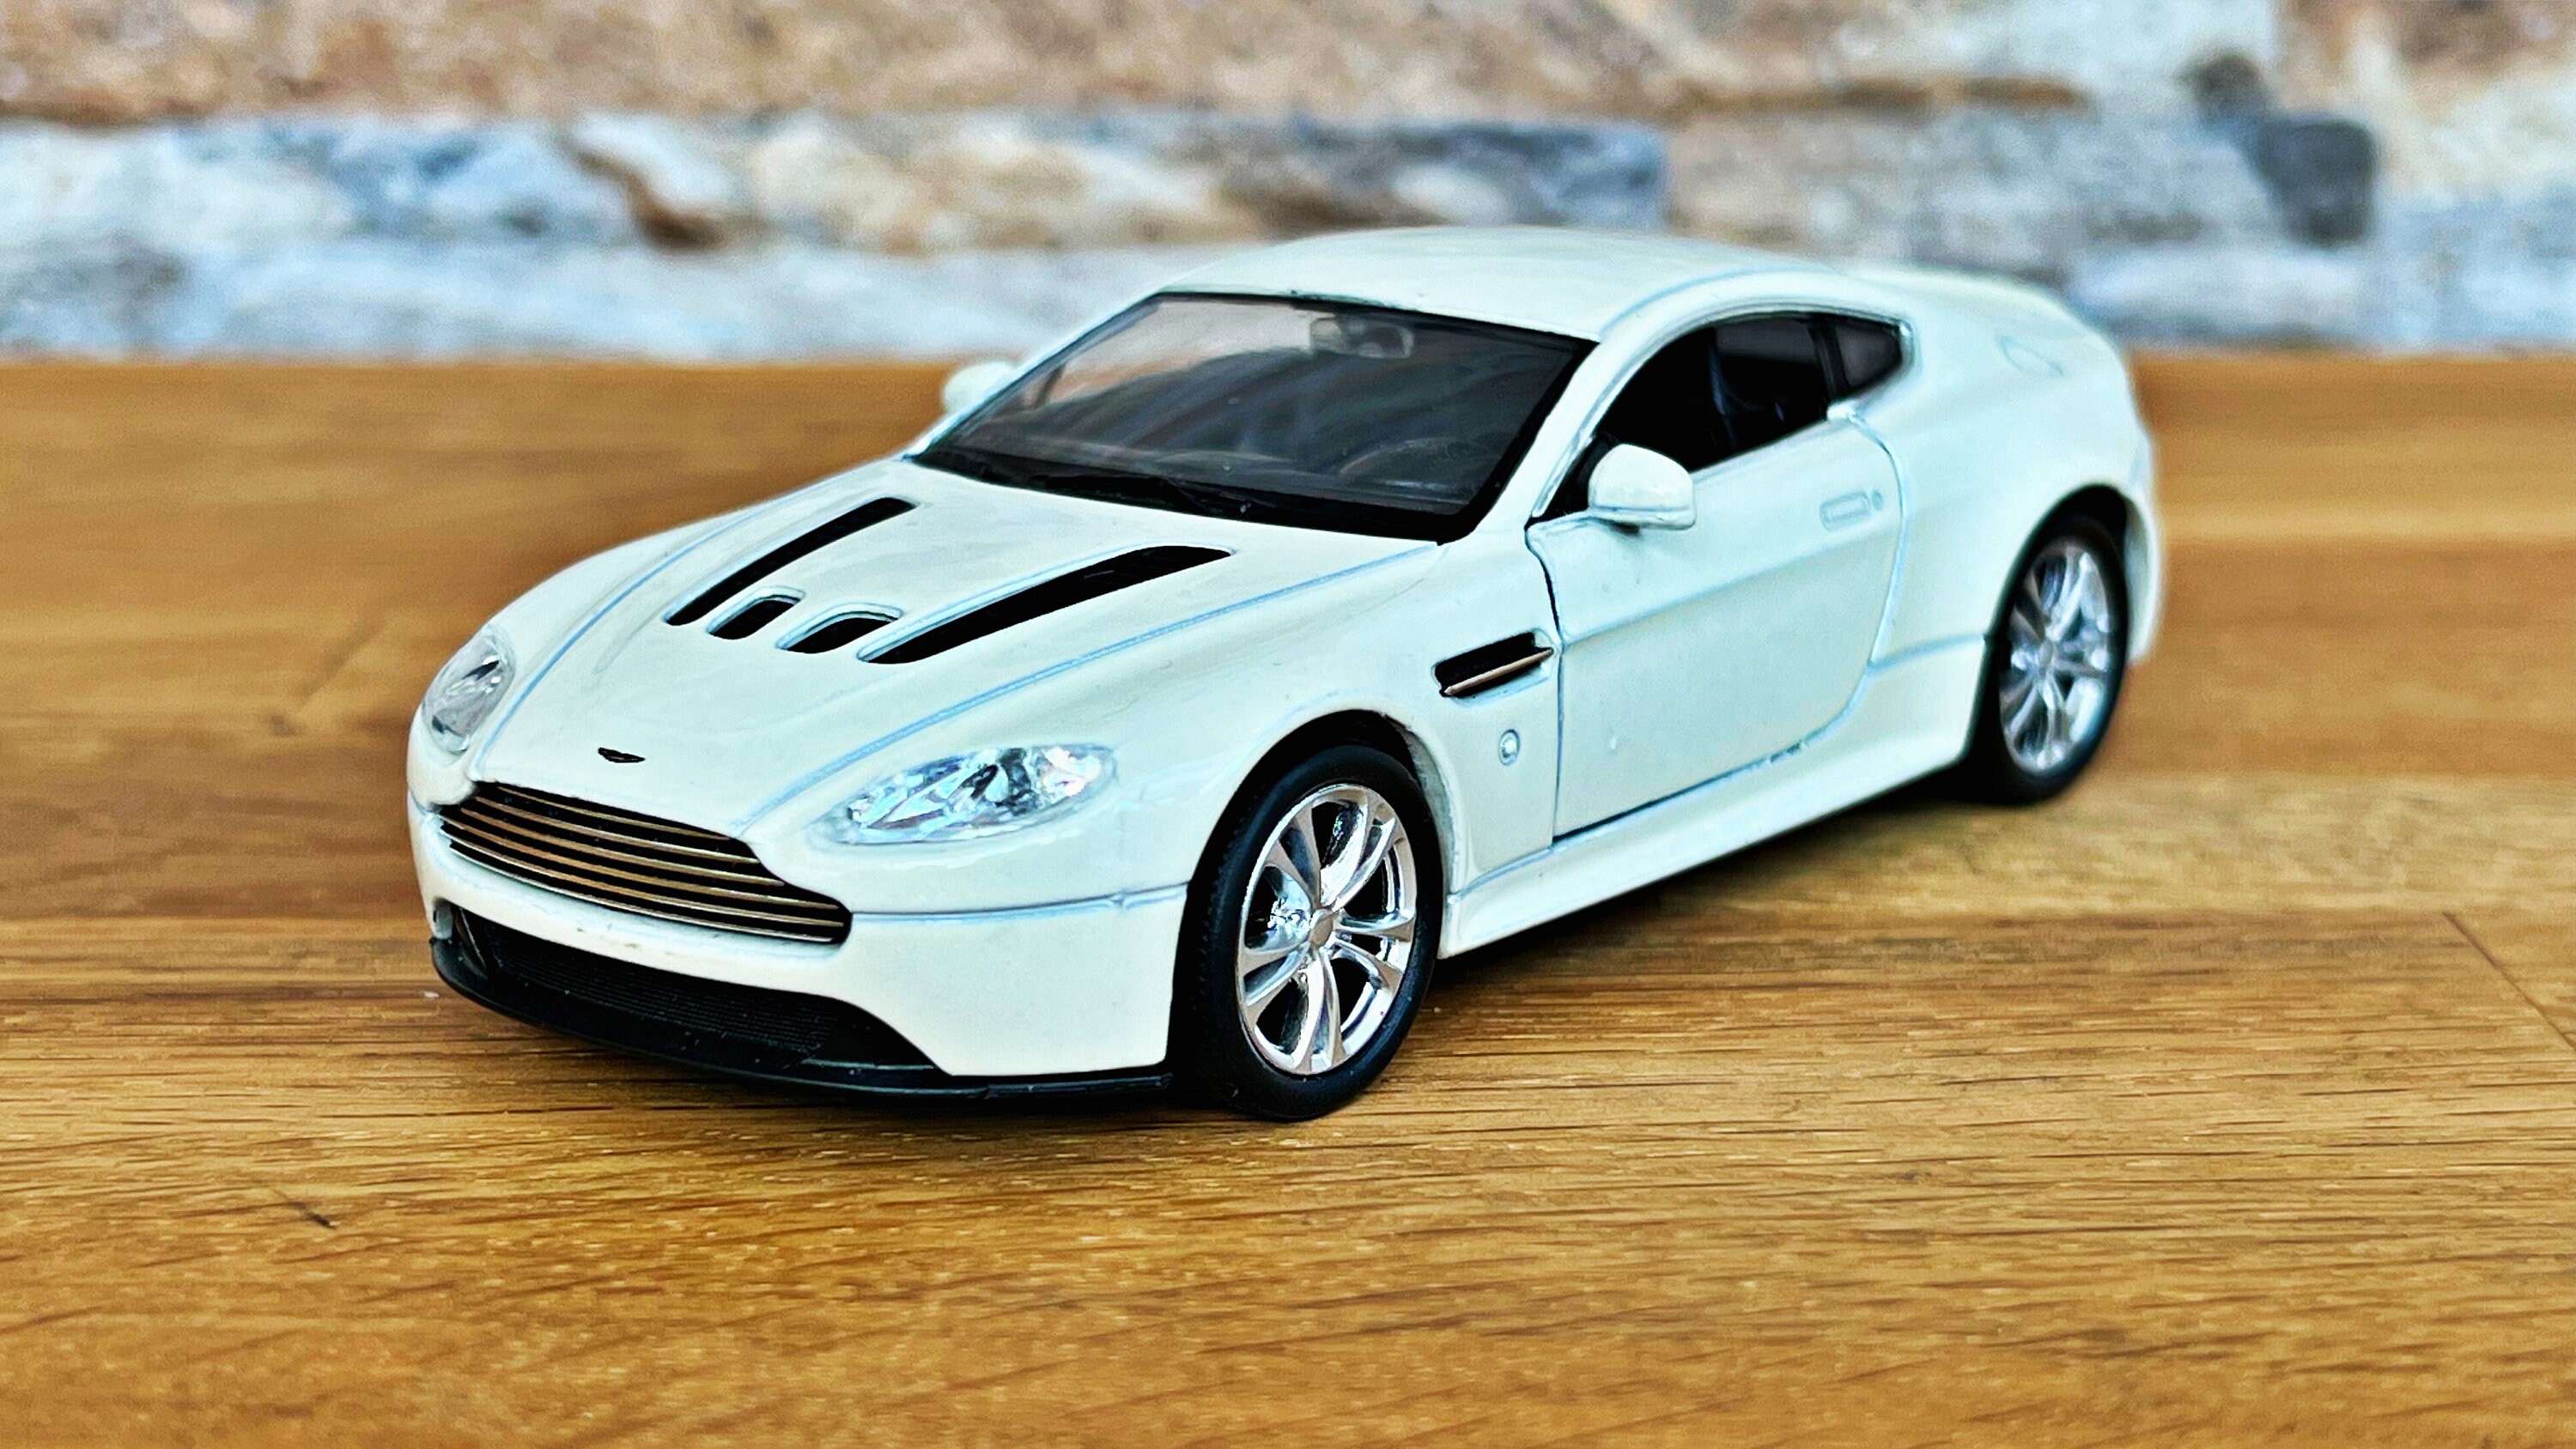 Aston Martin V12 Vantage Coupé Modellauto 1/36 Diecast Auto Modellauto im  Maßstab 1:36 Die Cast Auto Sammelobjekt Aston Martin -  Schweiz